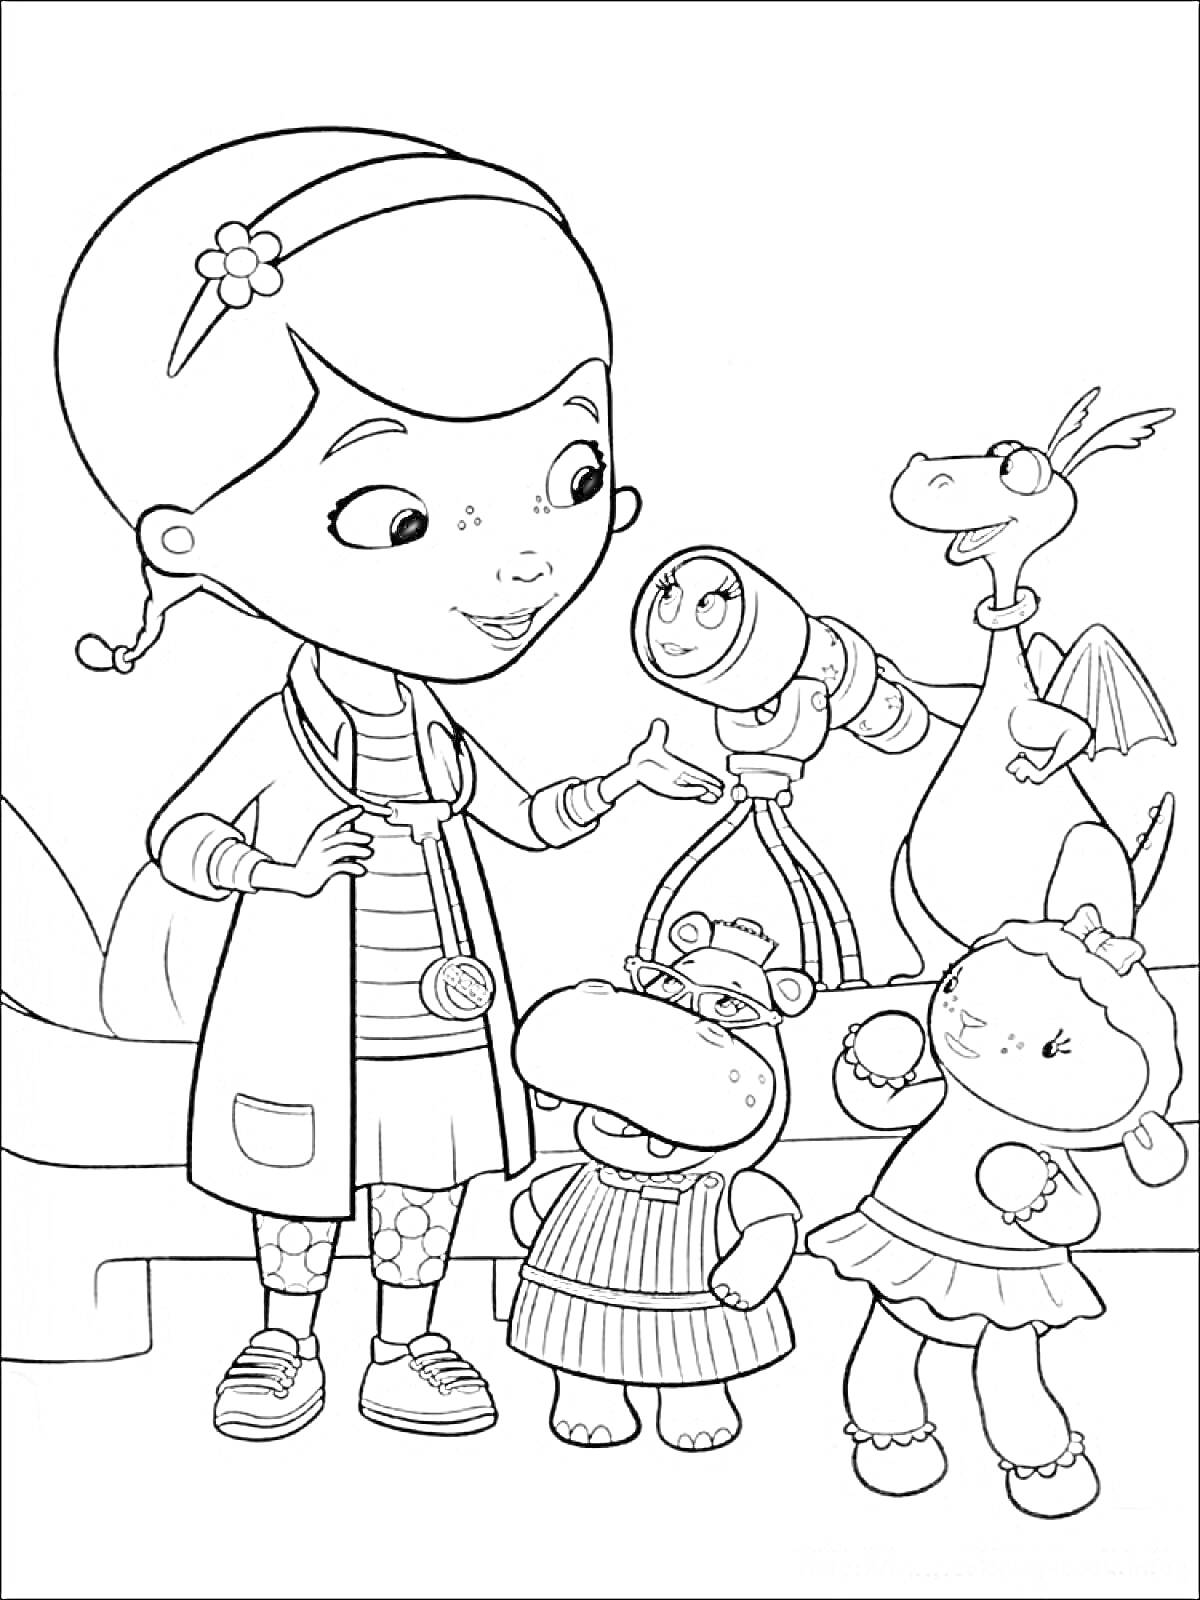 Раскраска Доктор Плюшева с друзьями - бегемот, дракон, овечка, робот